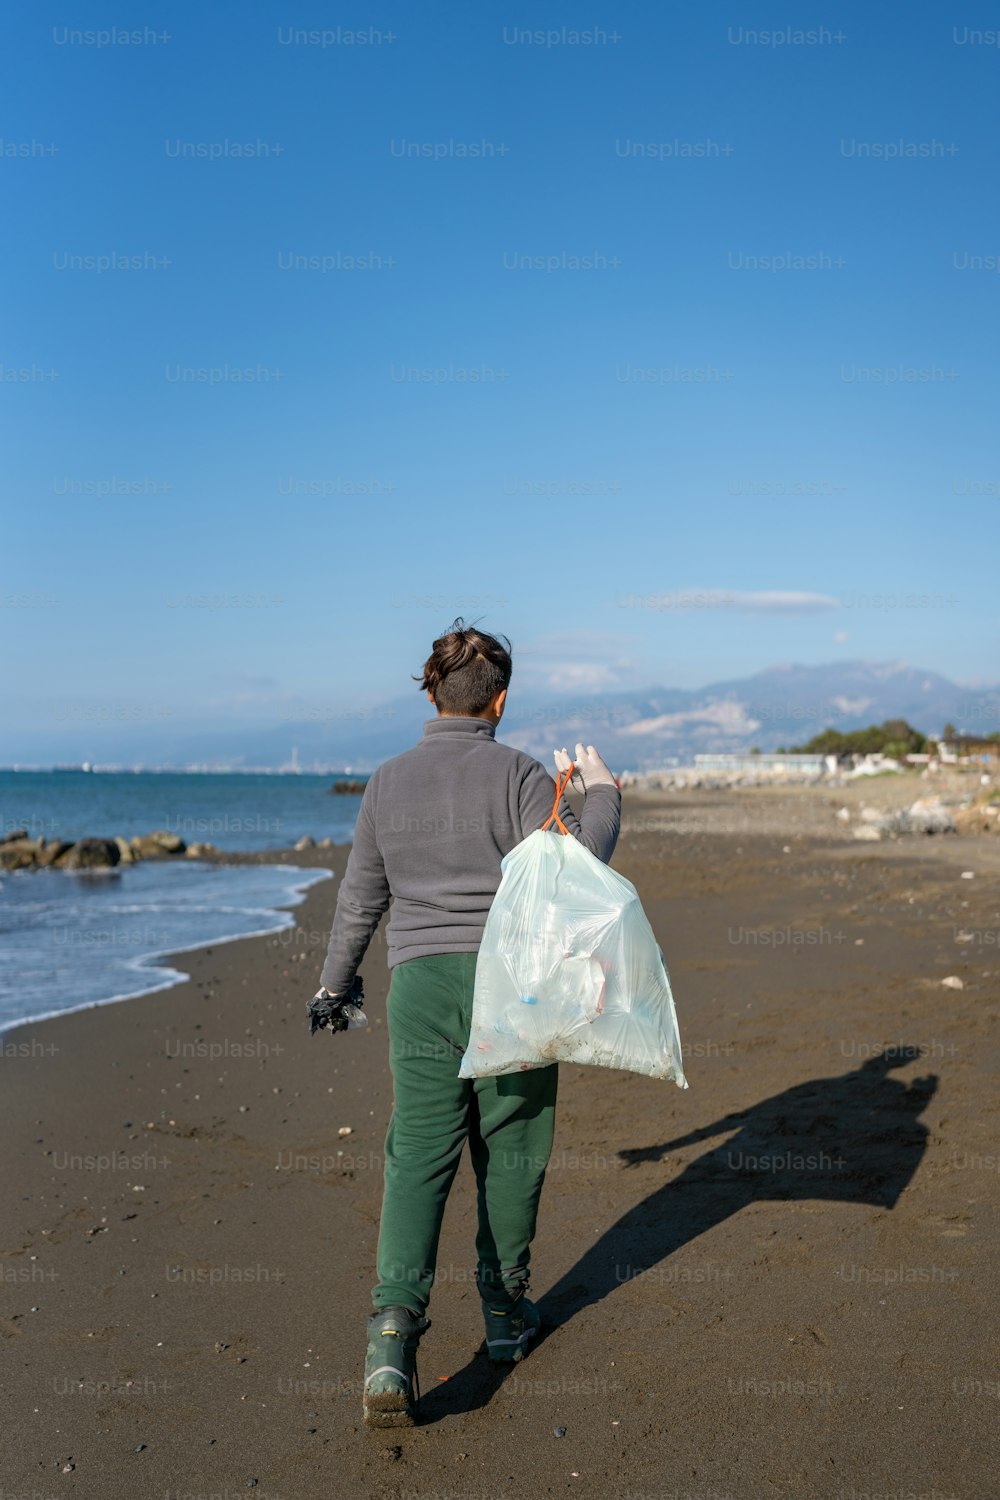 eine Person, die mit einer Plastiktüte am Strand spazieren geht